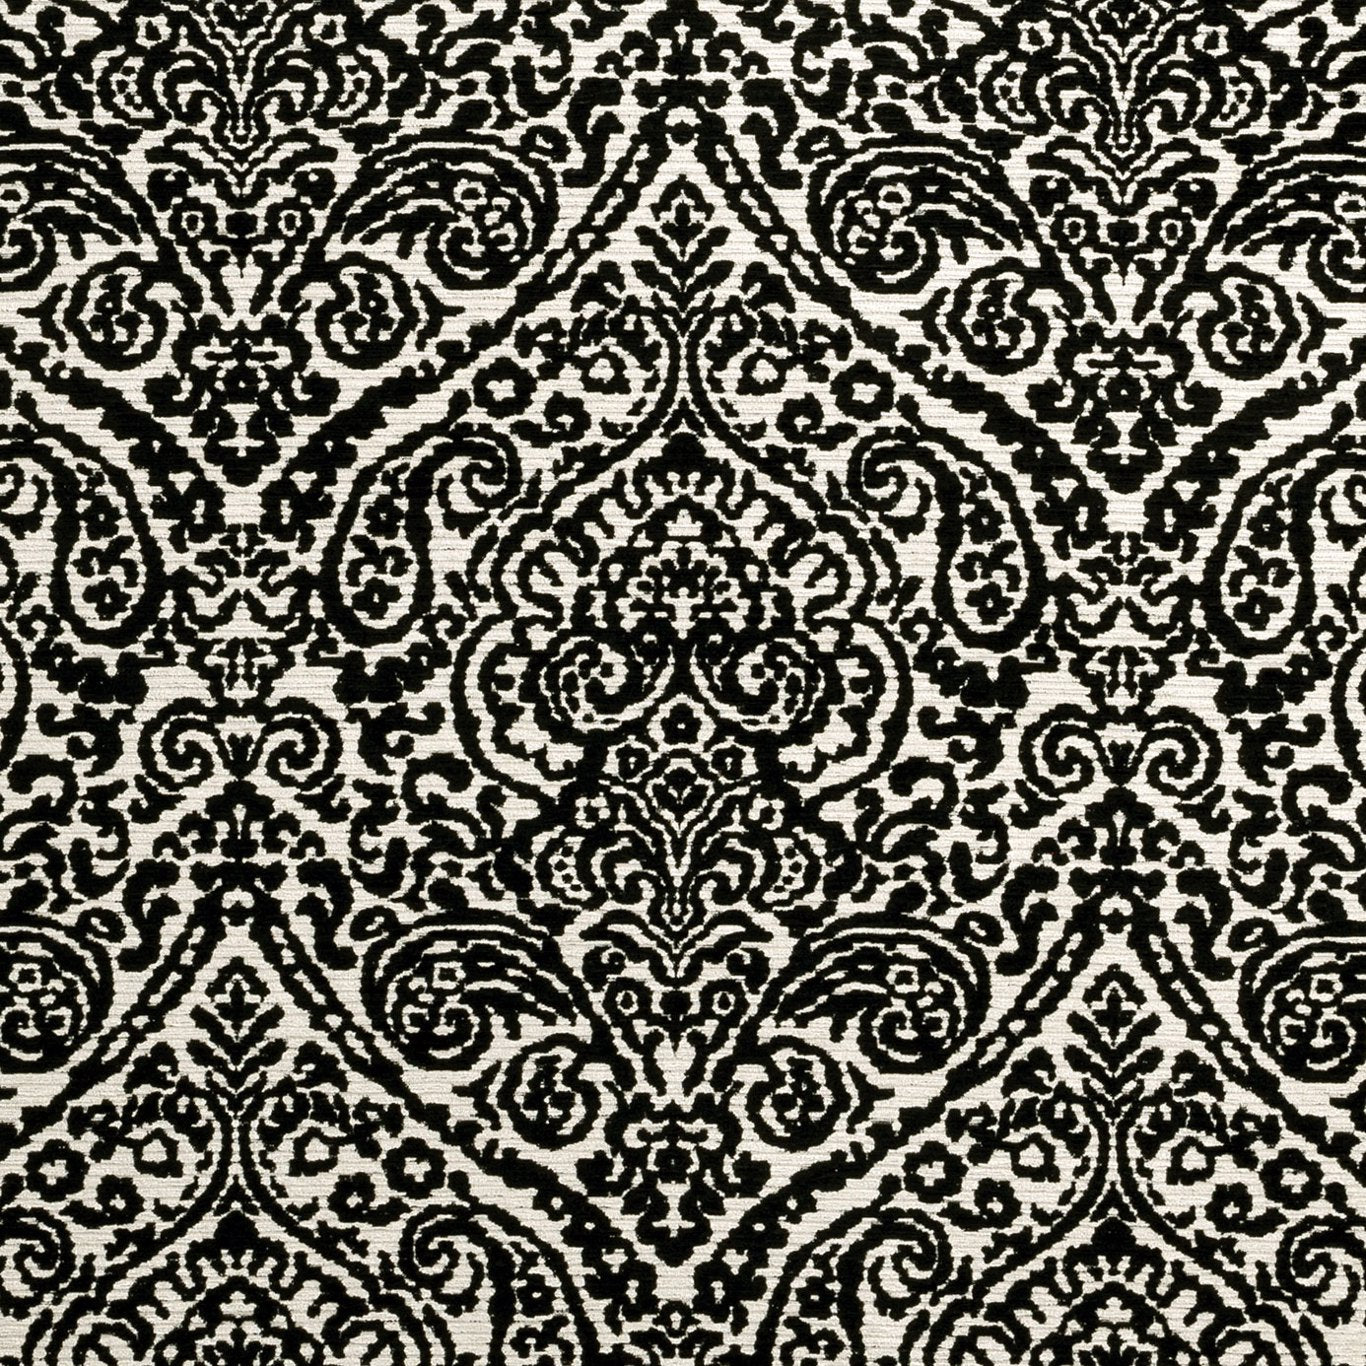 Bw1023 Fabric by Clarke & Clarke - F0896/01 - Black/White